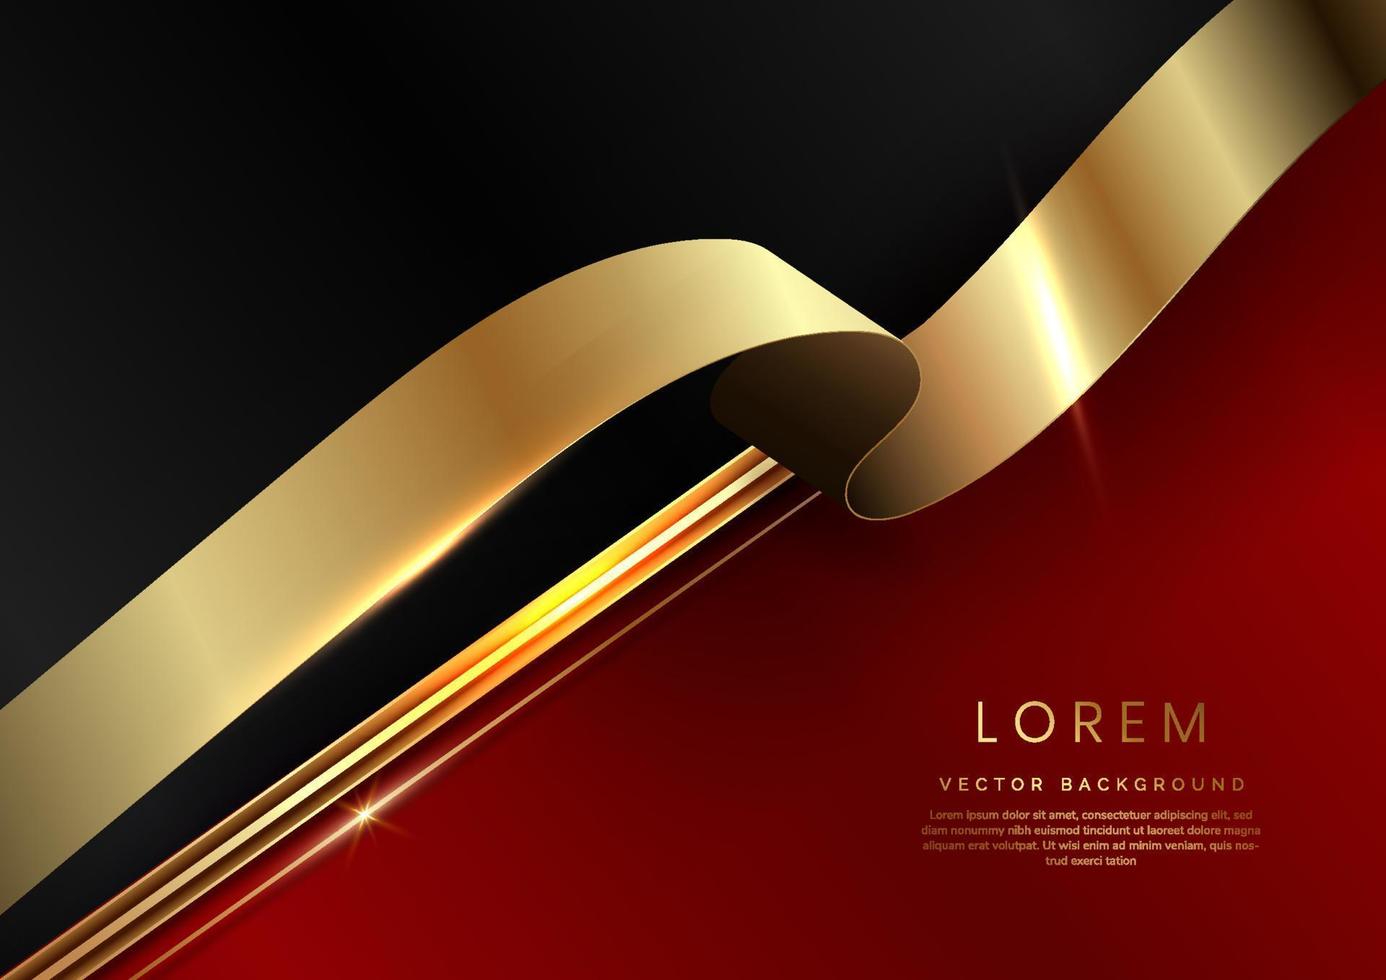 abstracte 3D-sjabloon diagonaal rood en zwart met gouden lint lijnen achtergrond. luxe concept met kopie ruimte voor tekst. vector